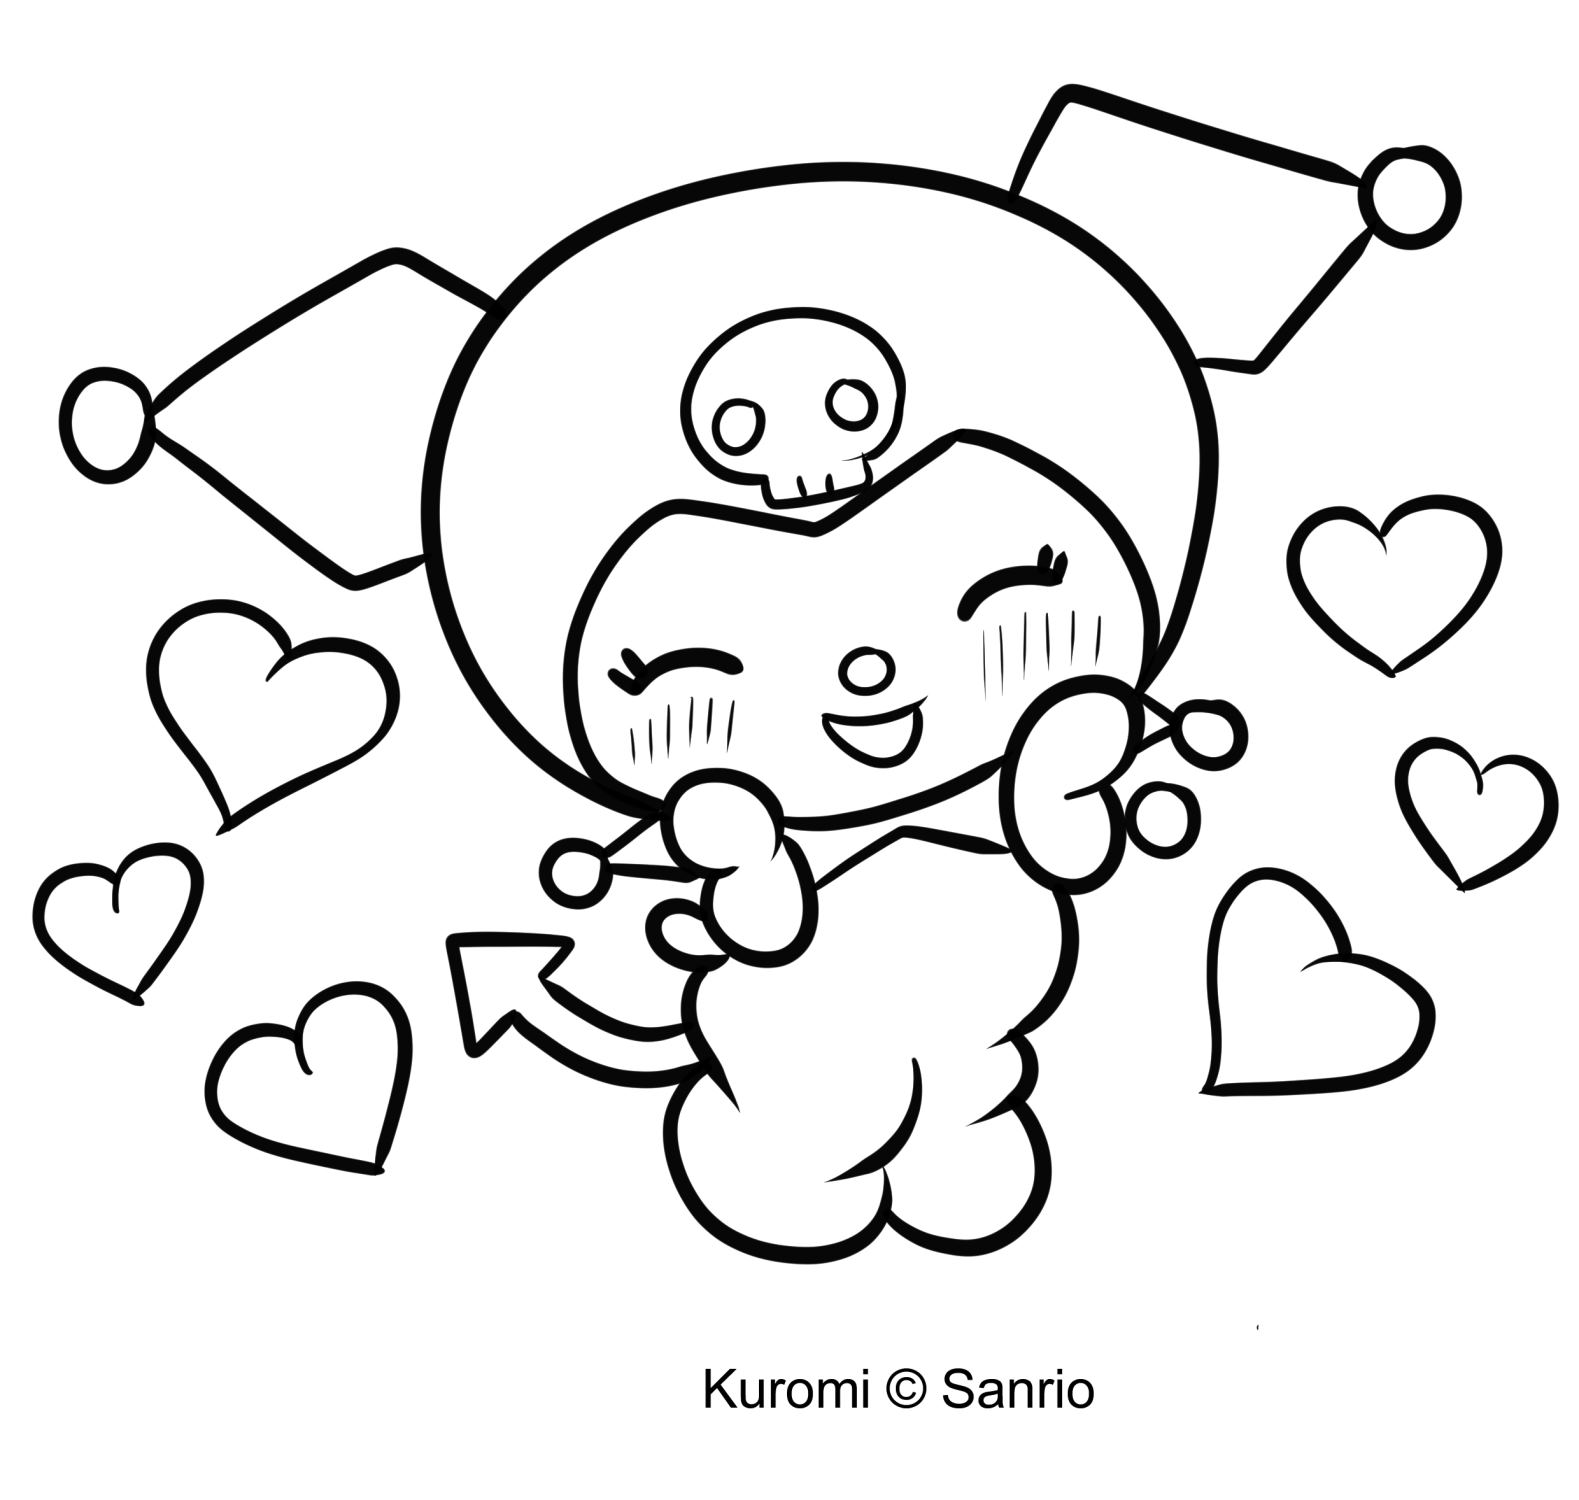 Розмальовка Куромі 09 із "Моєї мелодії" для друку та розфарбовування